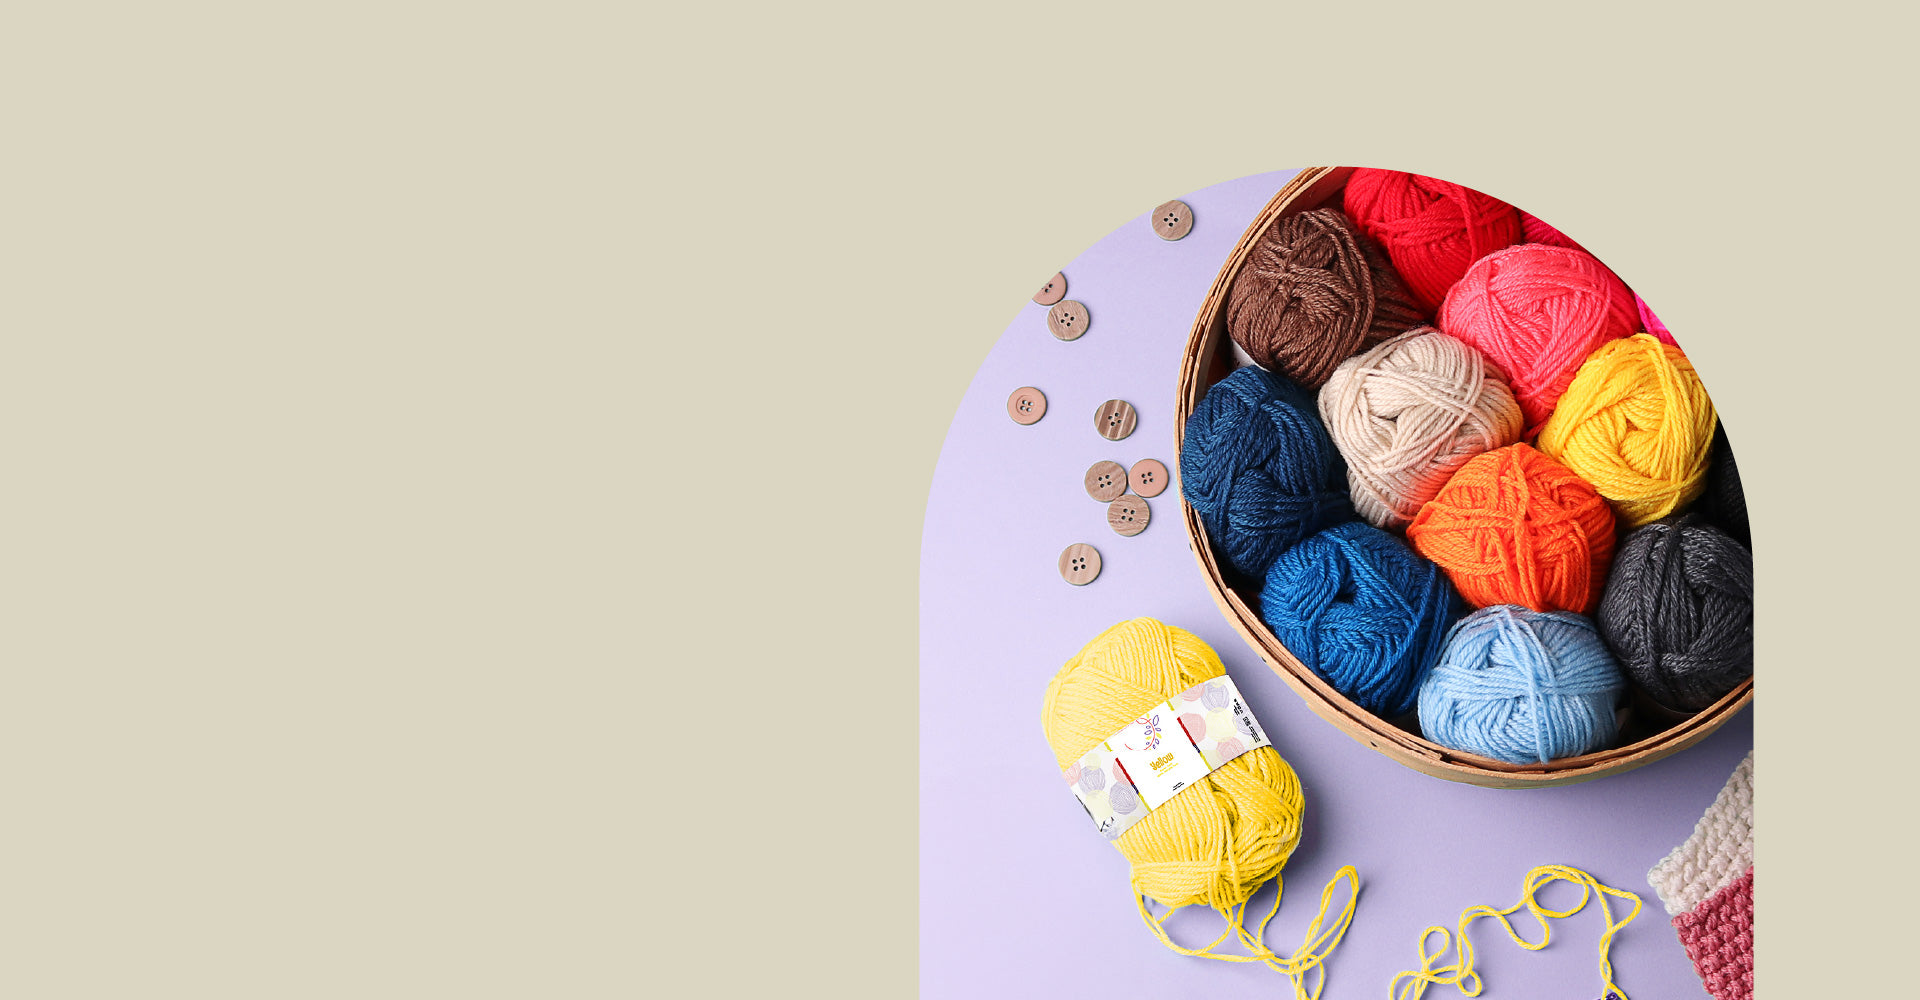 Hearth & Harbor DIY Crochet Kit (45 Pieces), Beginner Crochet Set